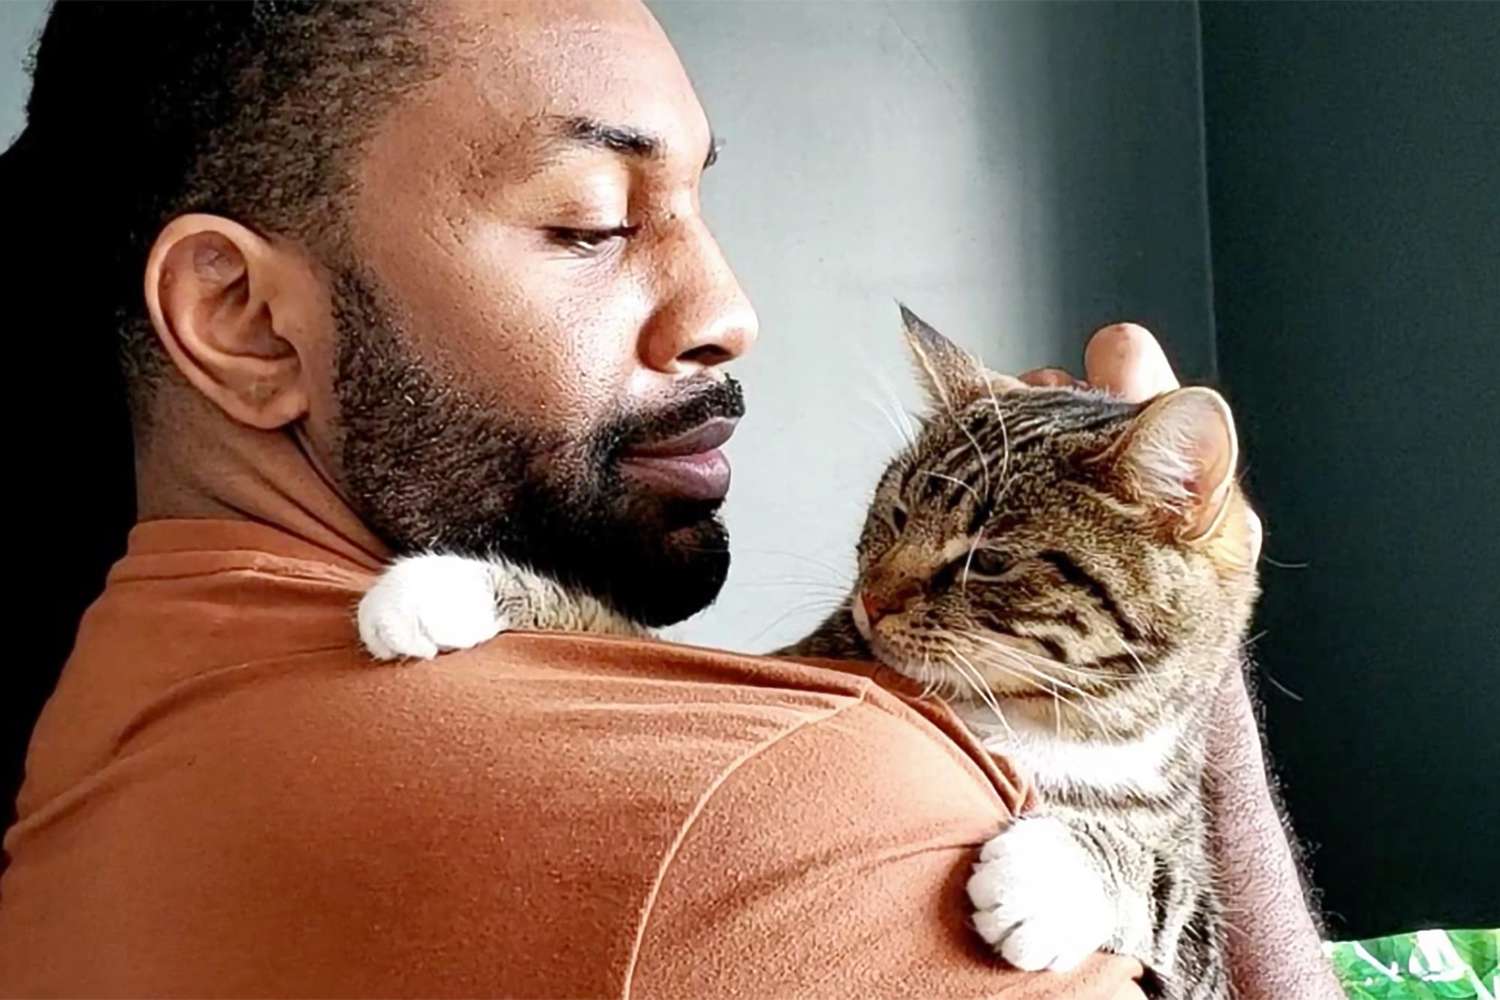 Abdul Williams and his cat